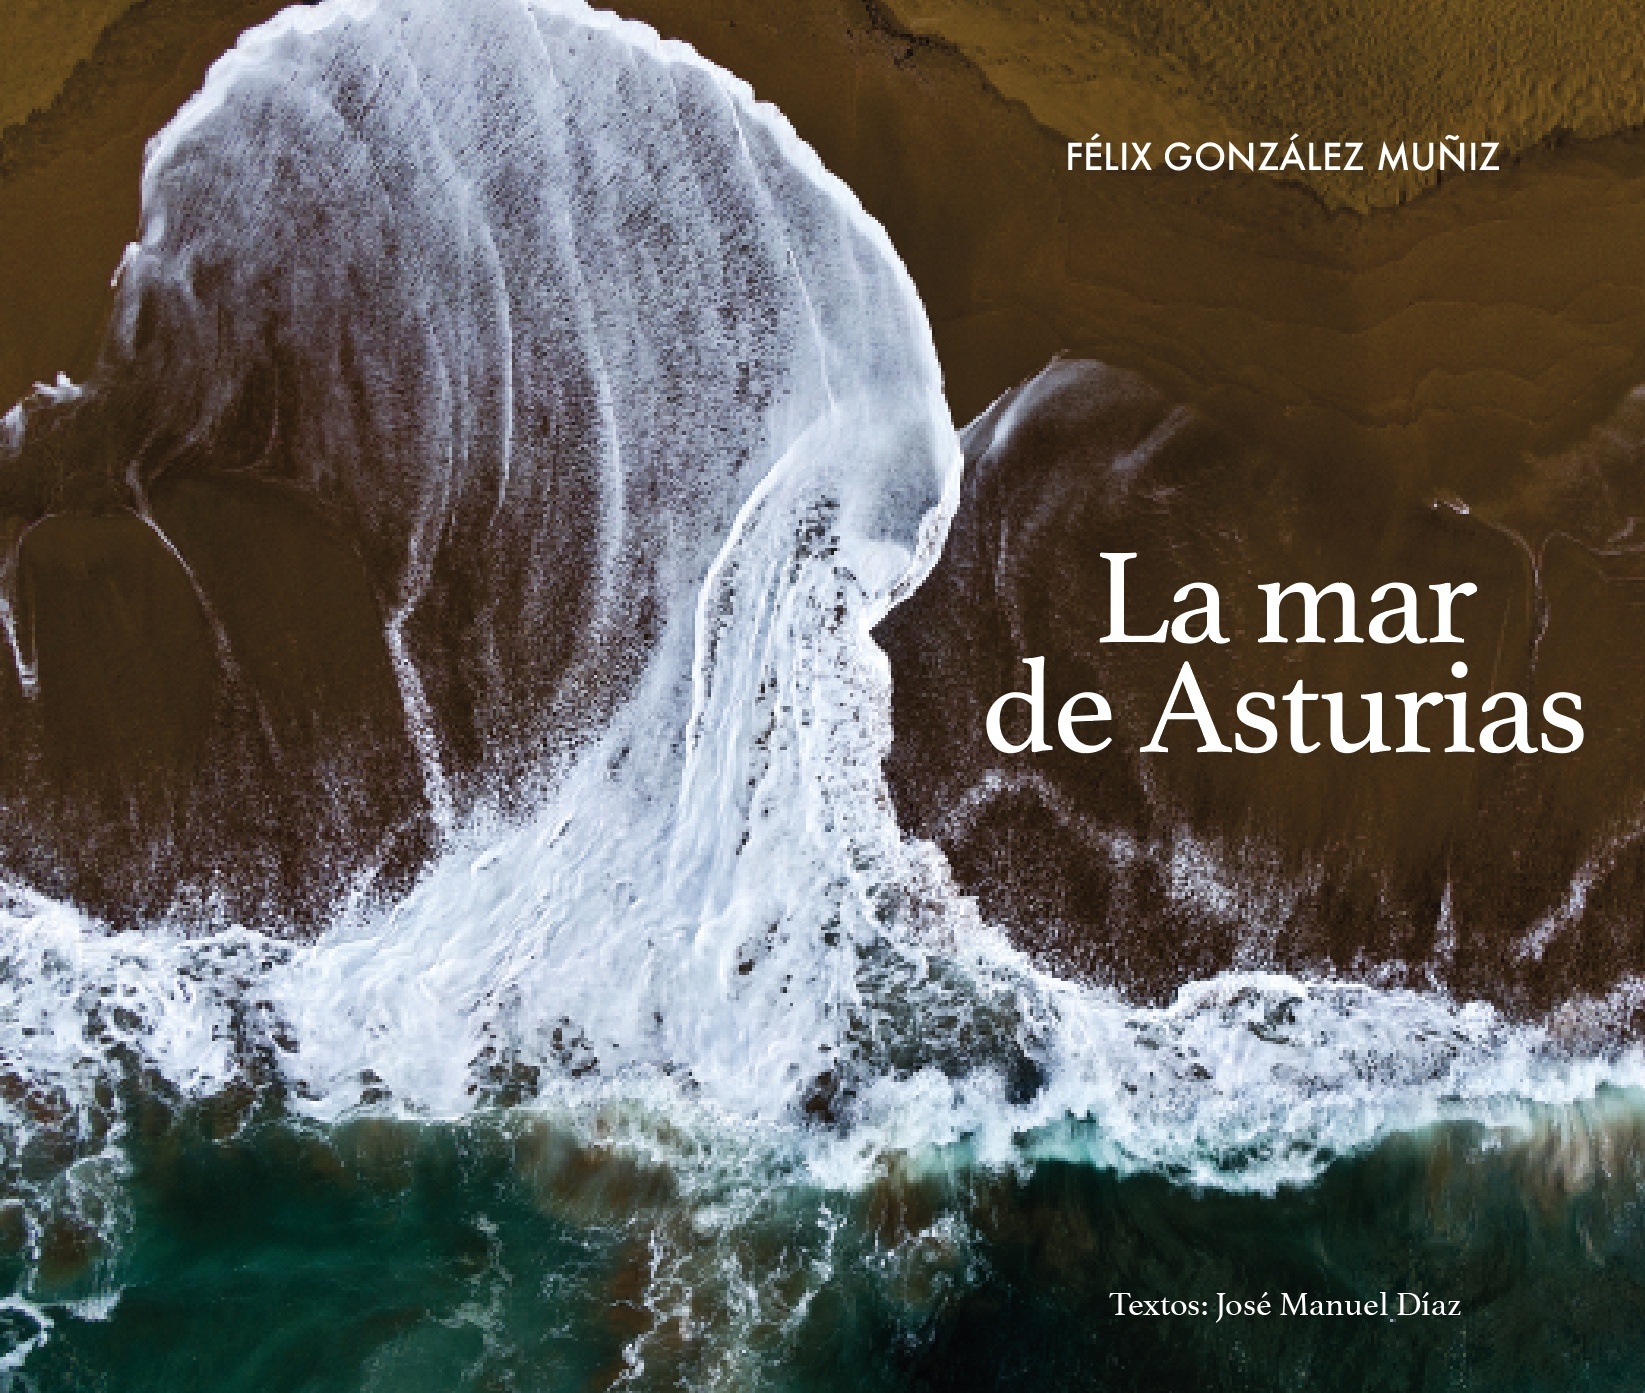 La mar de Asturias